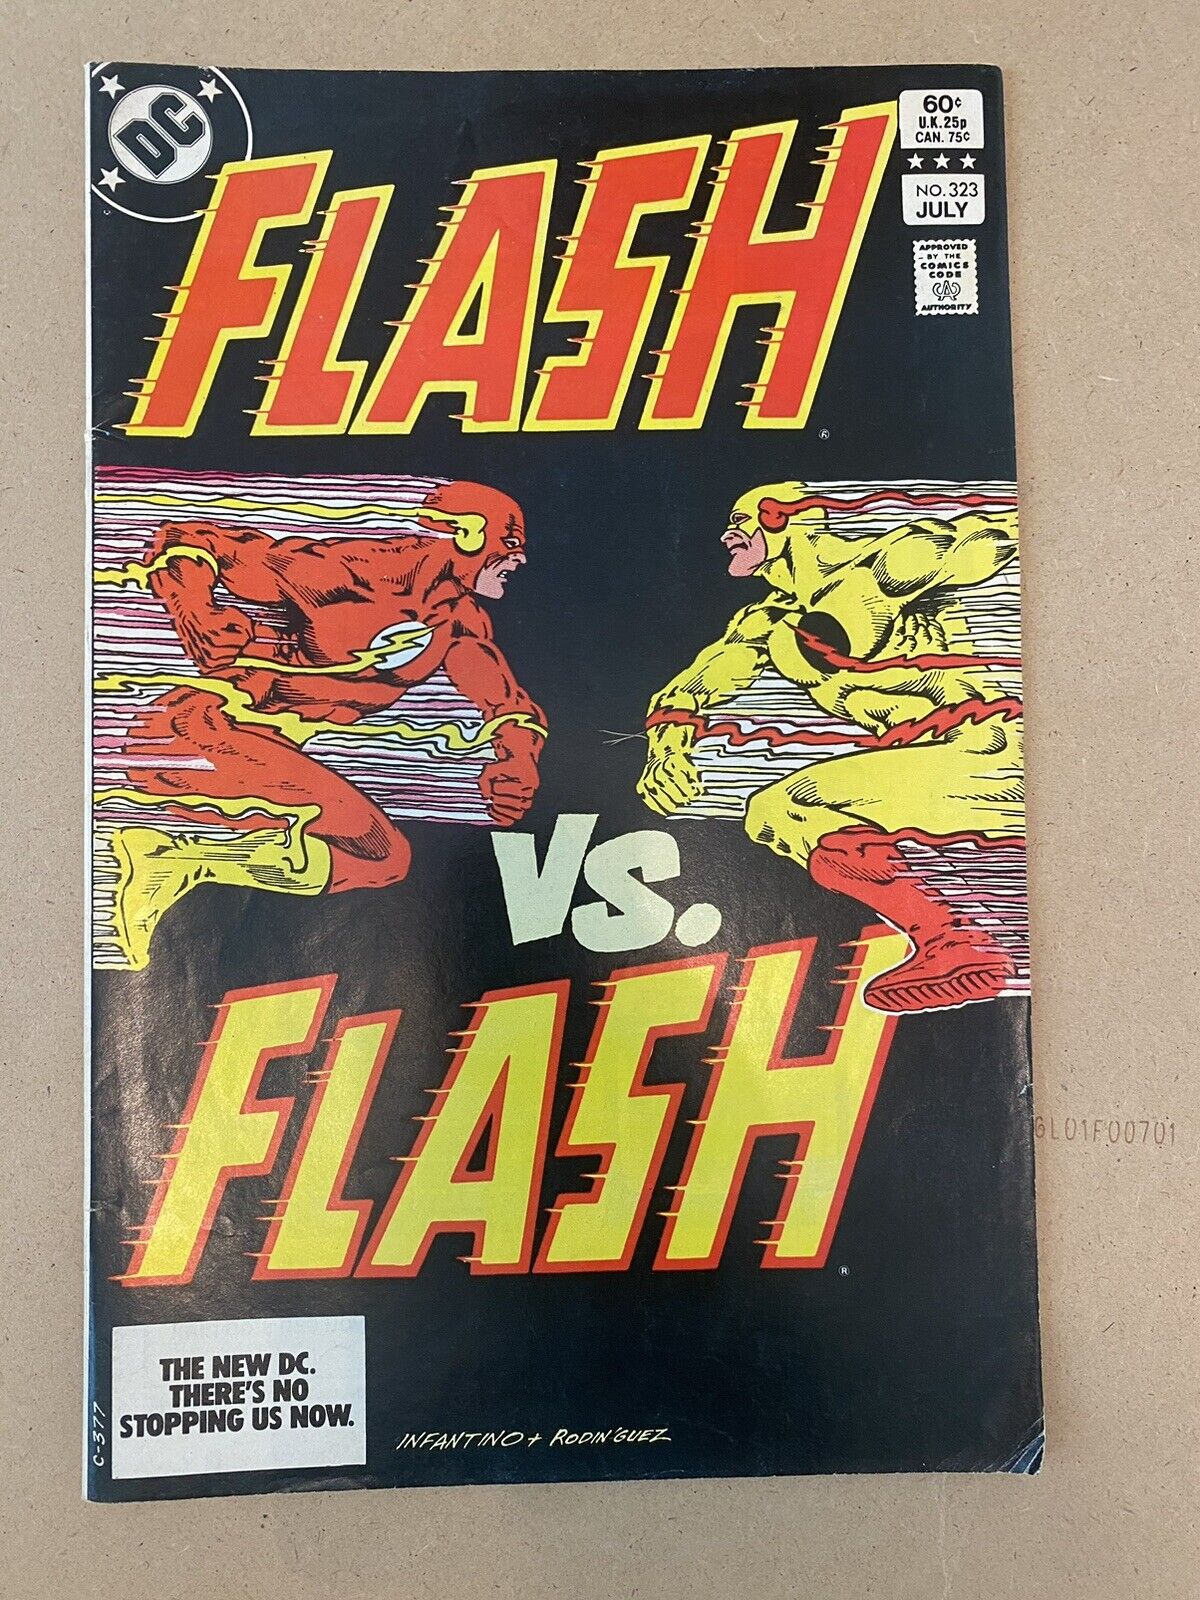 DC Comics Flash vs. Flash #323